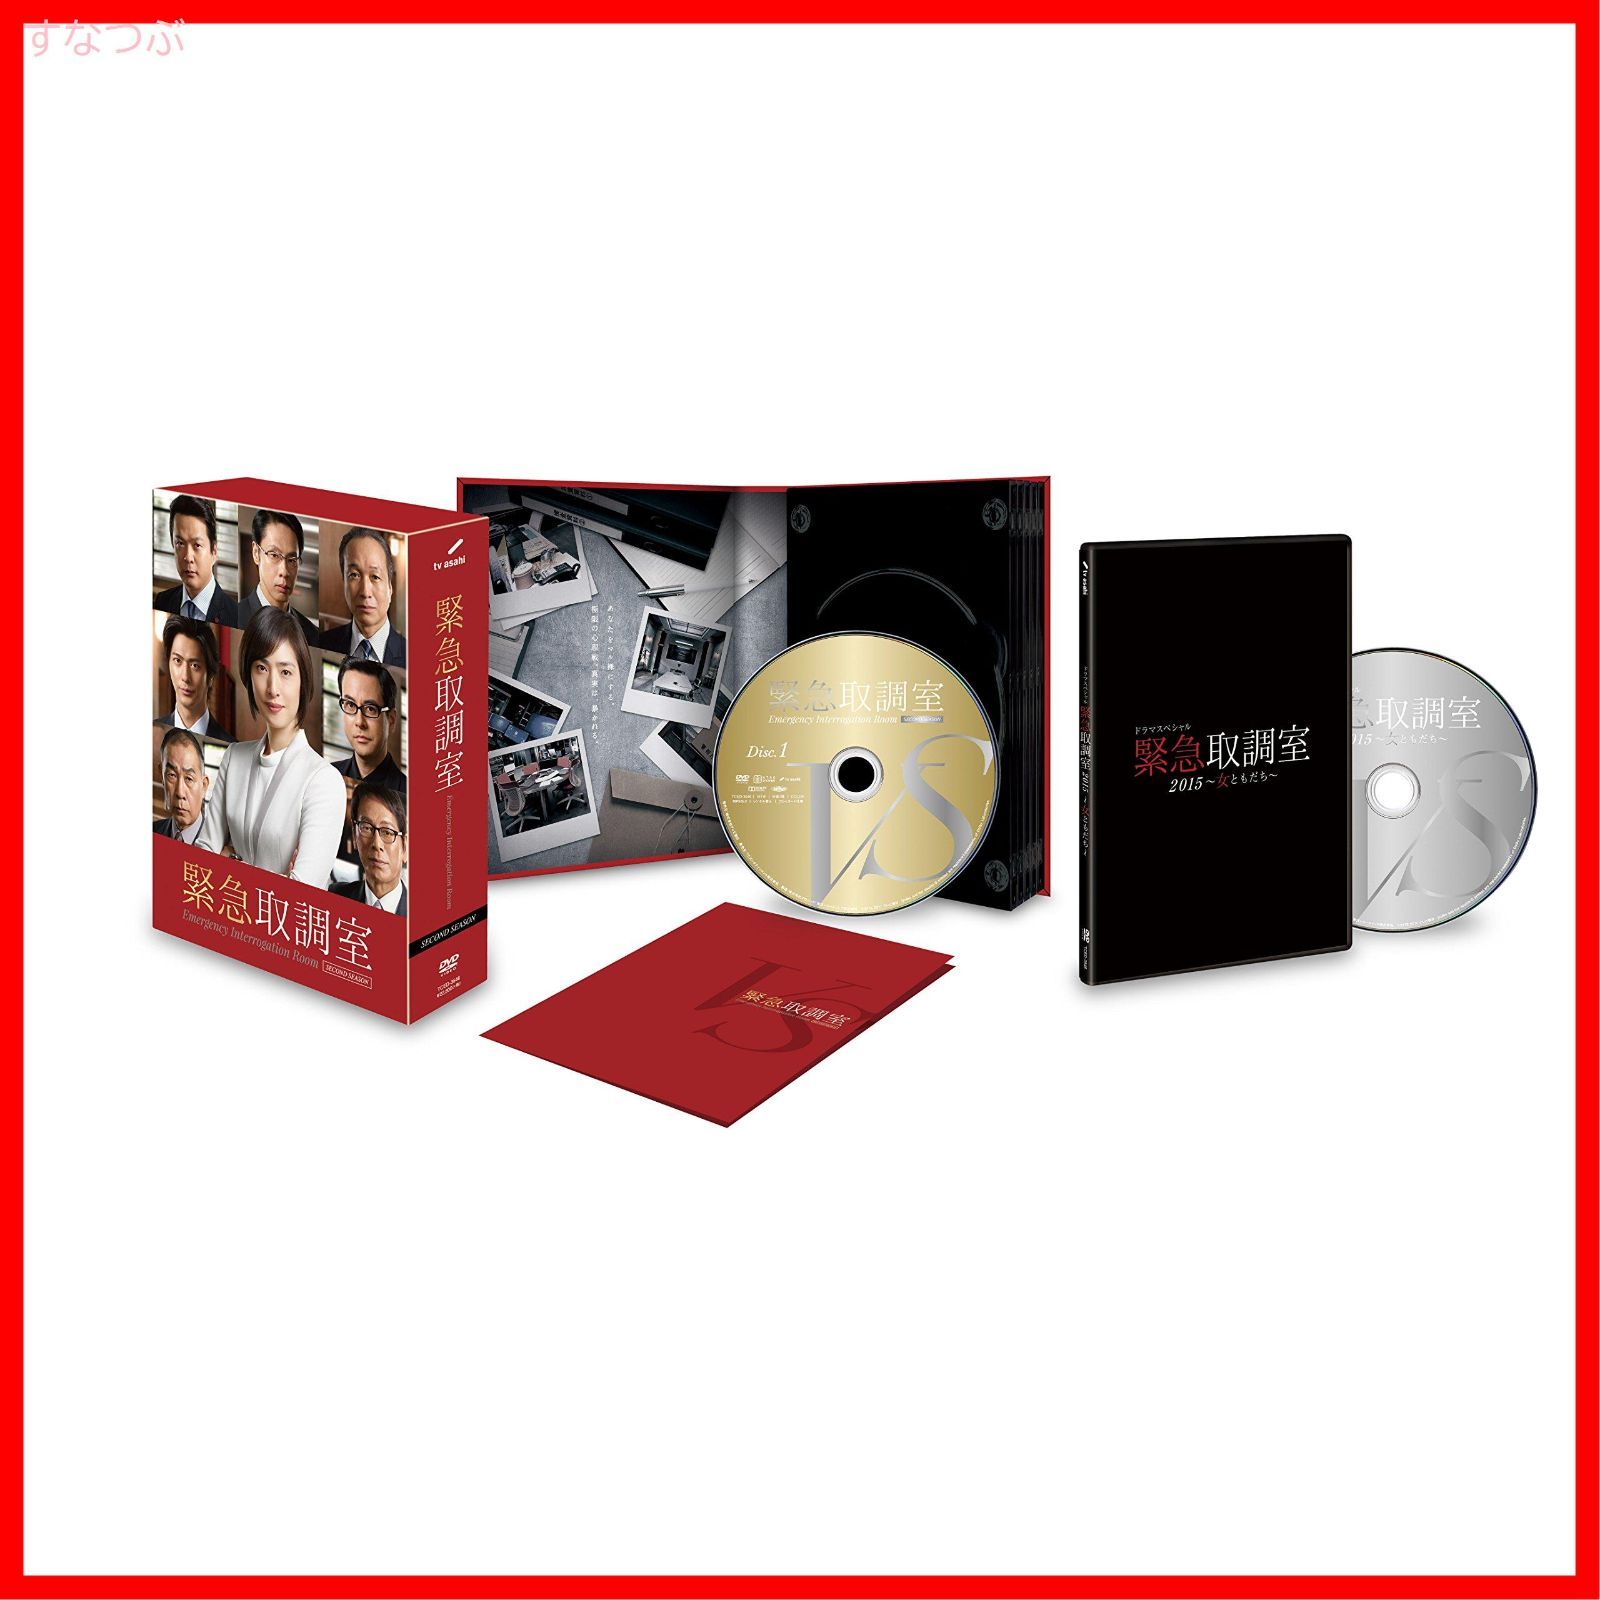 【新品未開封】緊急取調室 SECOND SEASON DVD-BOX 天海祐希 (出演) 田中哲司 (出演) 形式: DVD